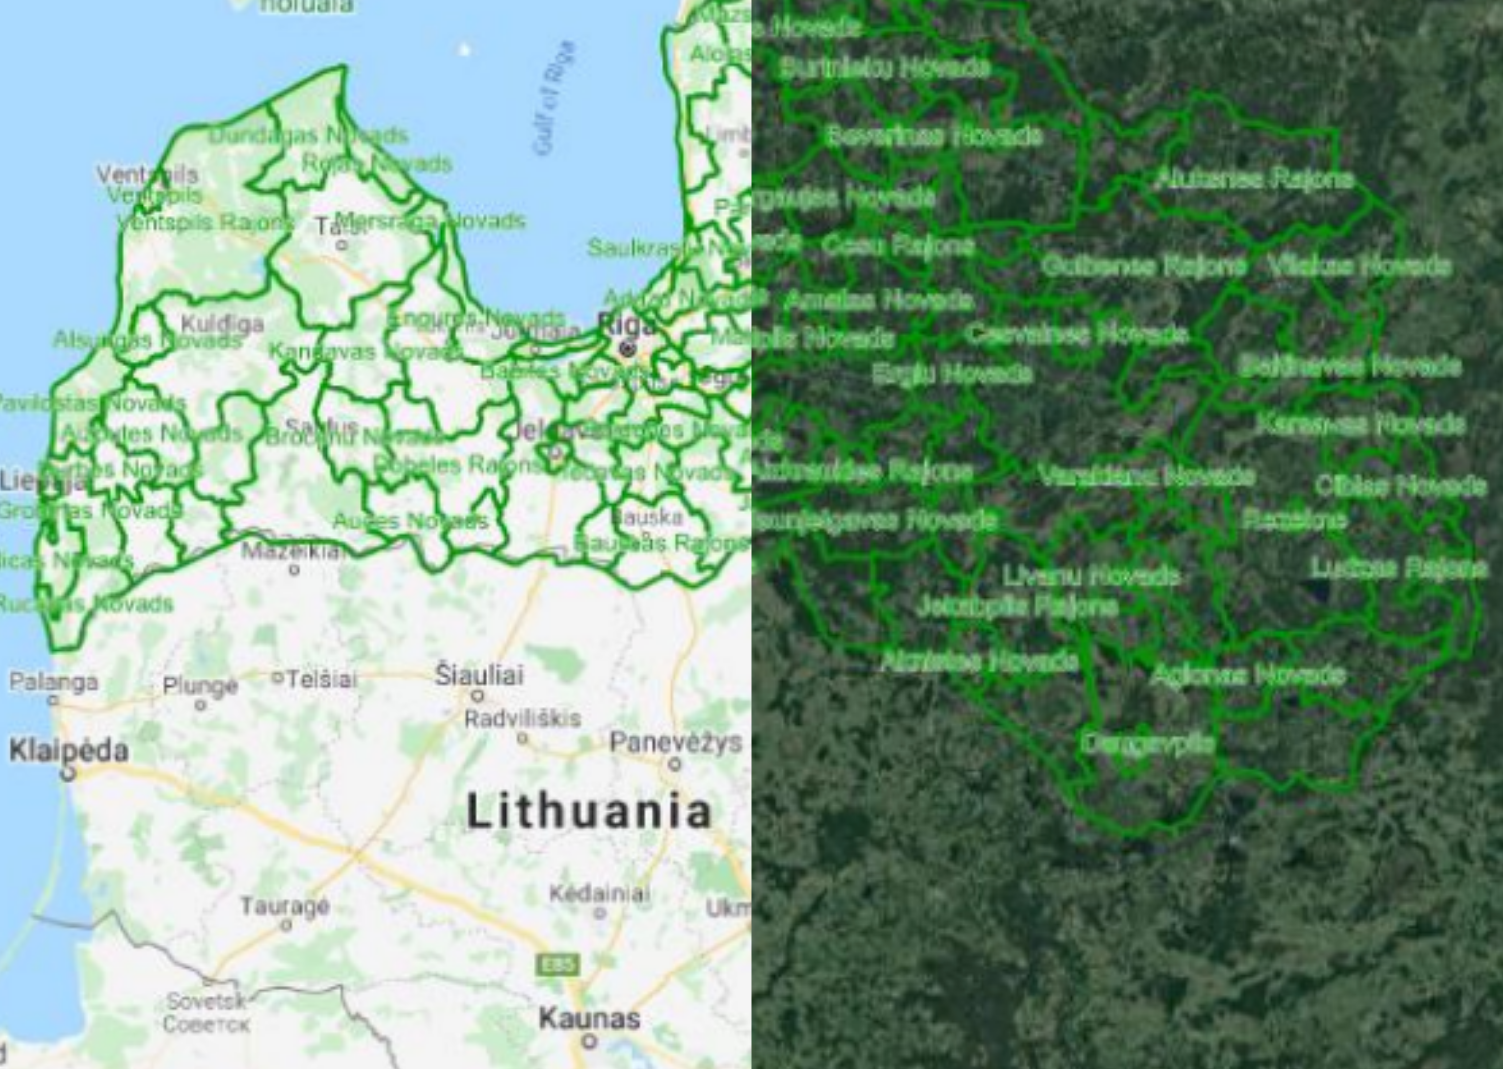 The Latvia Municipalities